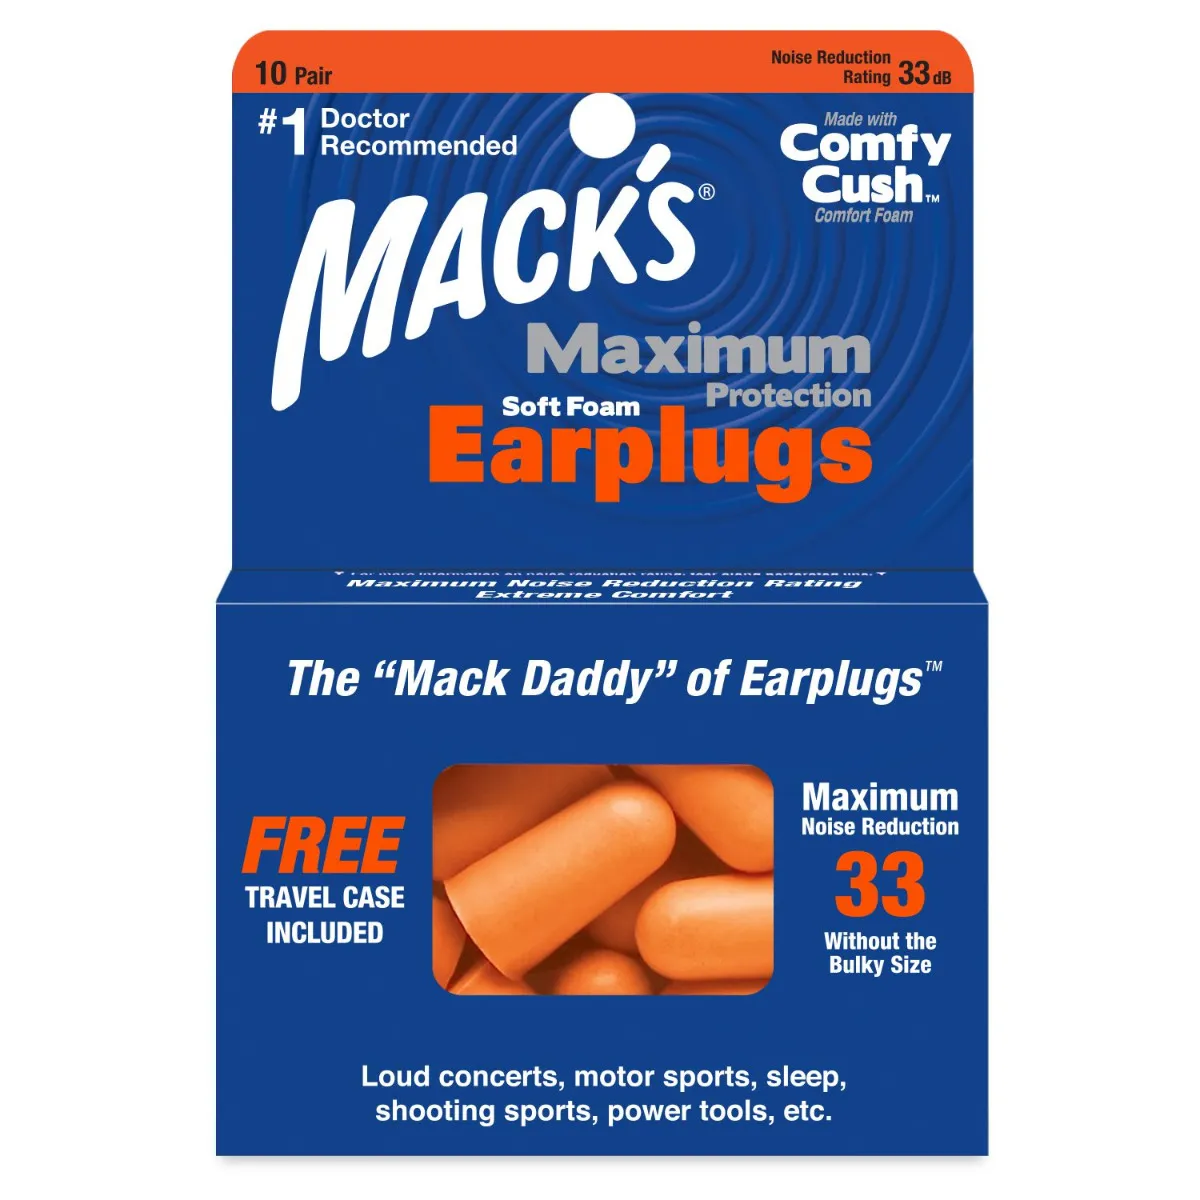 MACKS Maximum Protection špunty do uší 10 párů